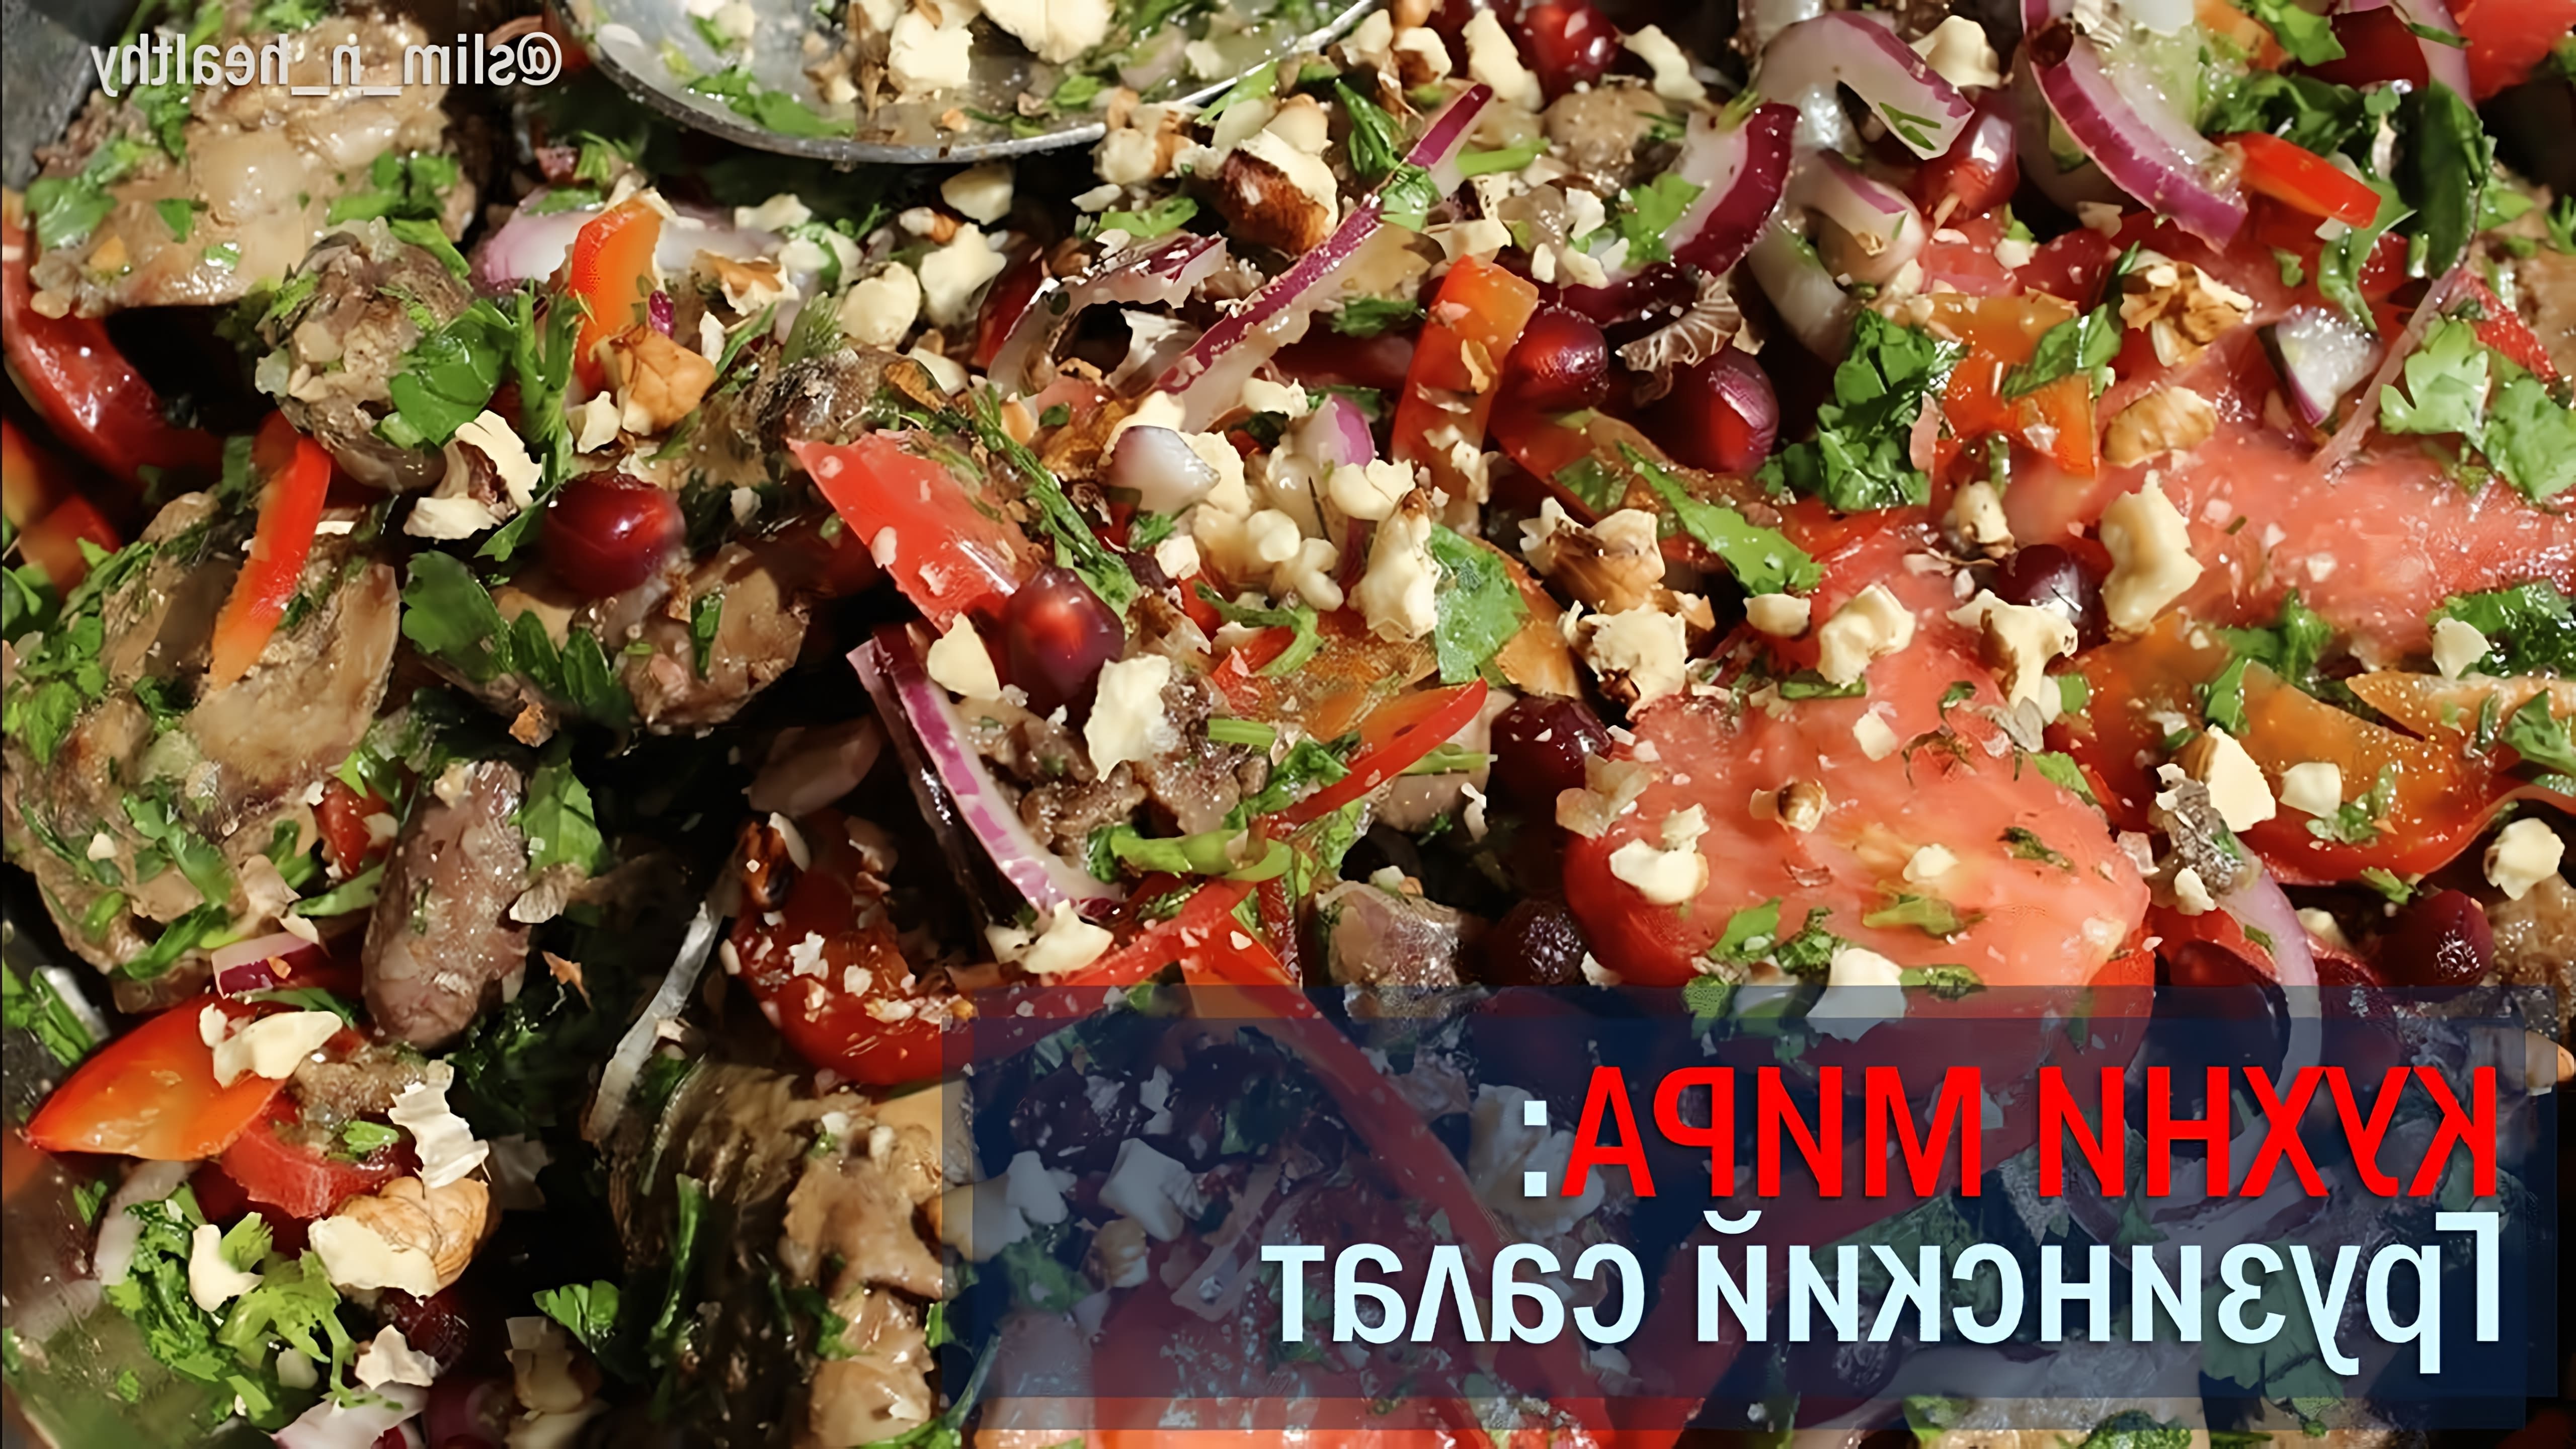 В этом видео демонстрируется процесс приготовления грузинского салата с грецкими орехами, кинзой, помидорами и огурцами